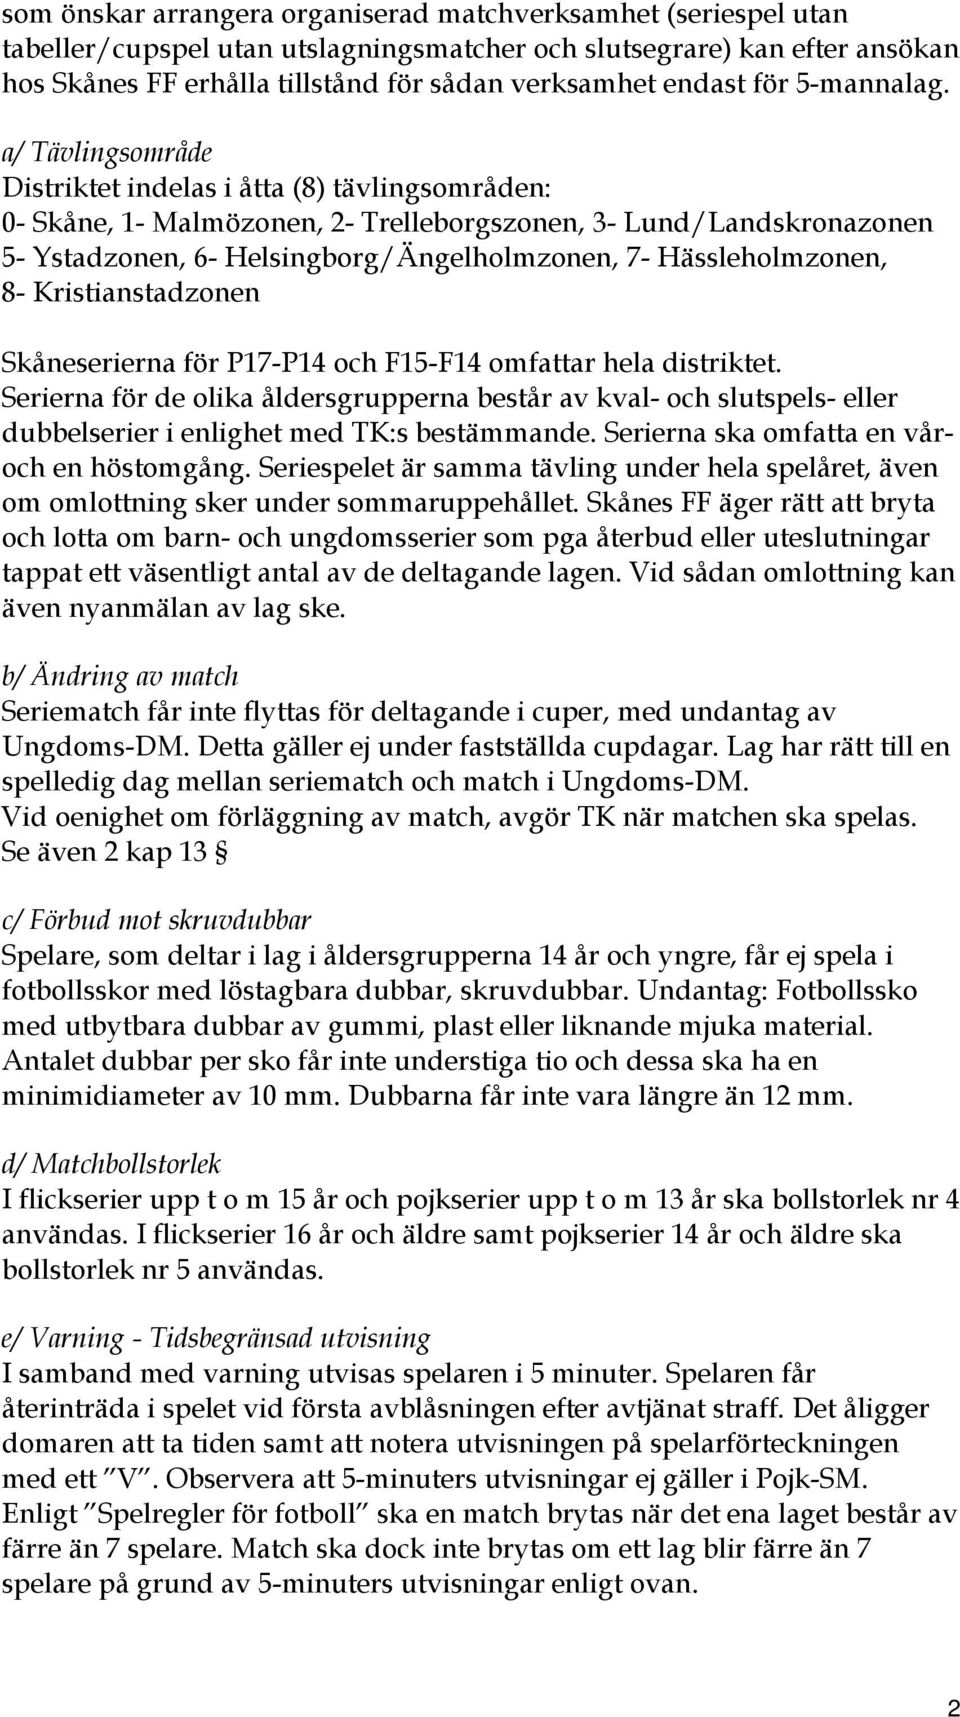 a/ Tävlingsområde Distriktet indelas i åtta (8) tävlingsområden: 0- Skåne, 1- Malmözonen, 2- Trelleborgszonen, 3- Lund/Landskronazonen 5- Ystadzonen, 6- Helsingborg/Ängelholmzonen, 7-